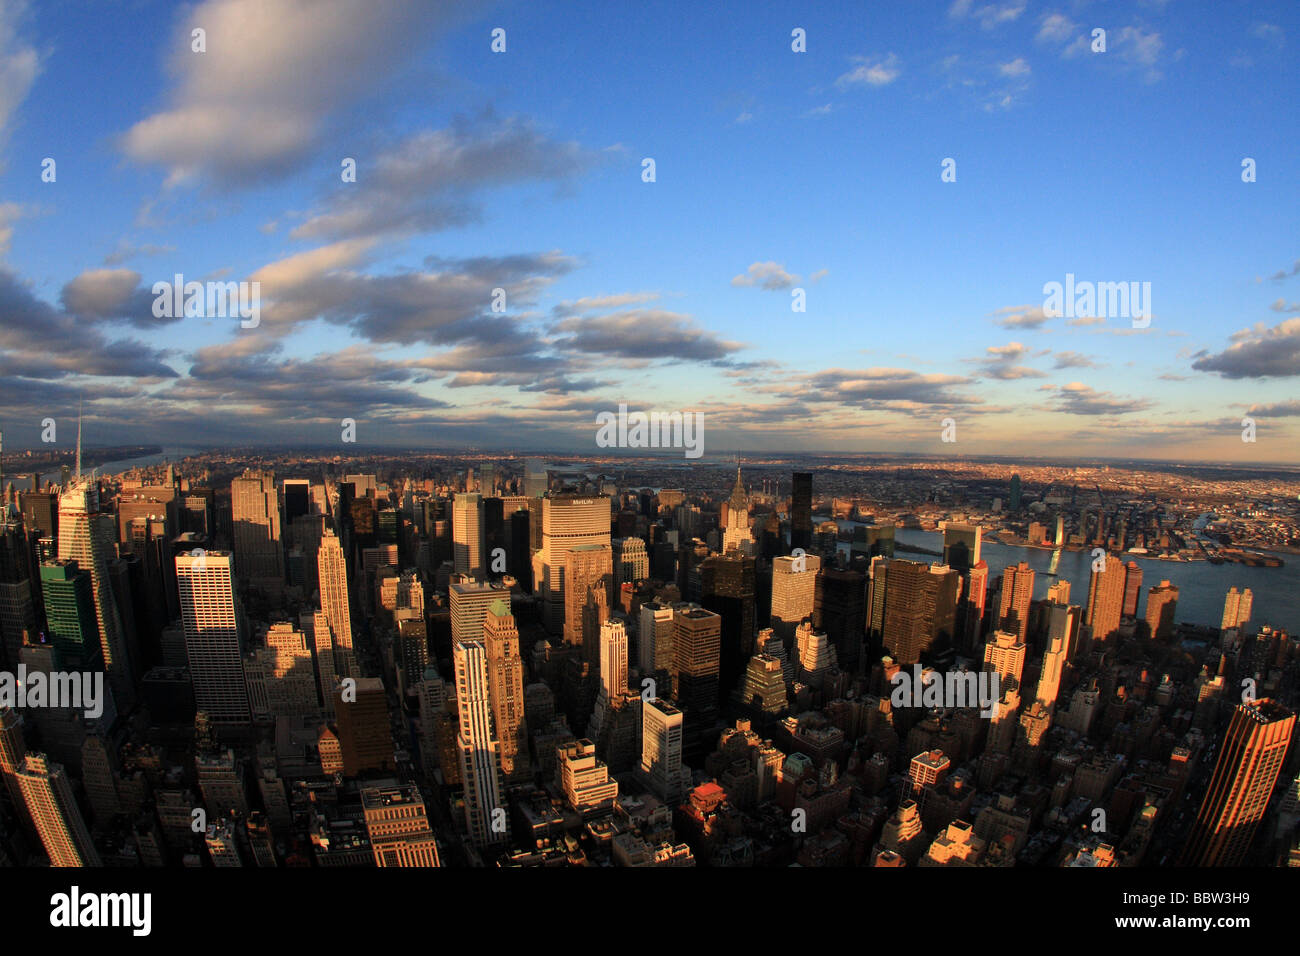 Une nuit vue en temps réel de gratte-ciels à New York City, du centre ville, avec vue sur Times Square Banque D'Images